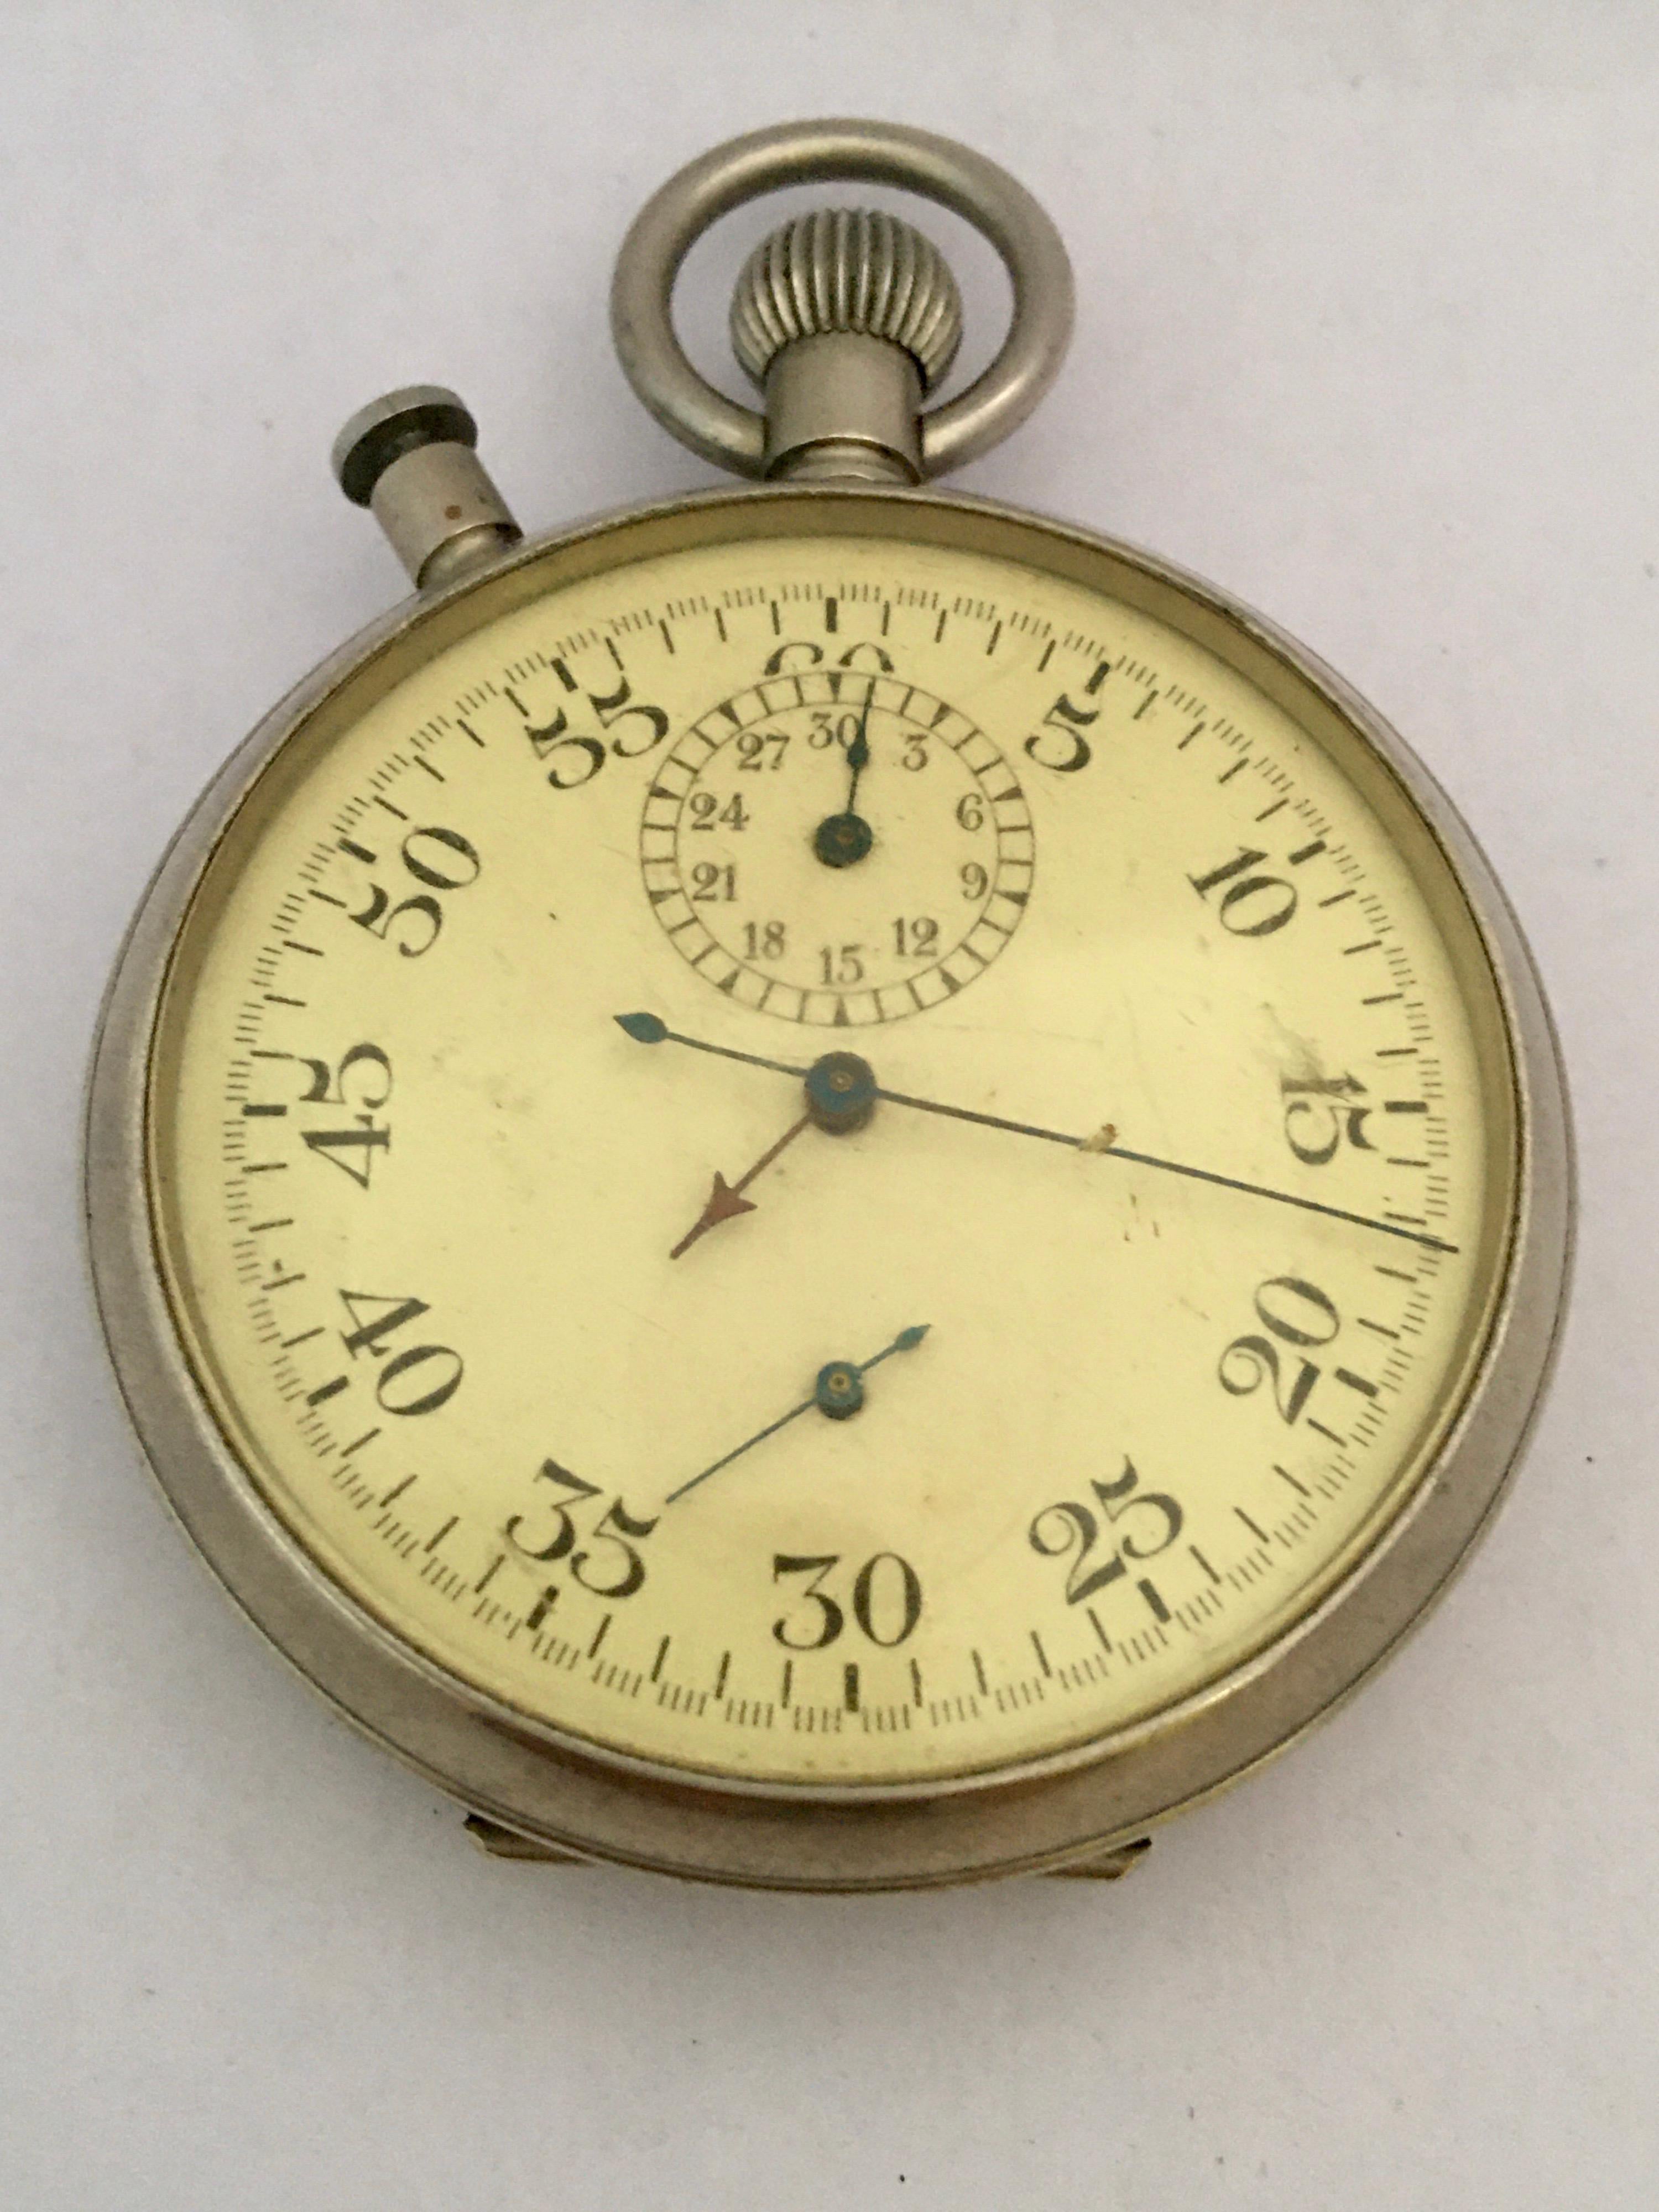 Rare chronomètre chronographe militaire des années 1940 avec rattrapante PATT. 4 No. 11643 12